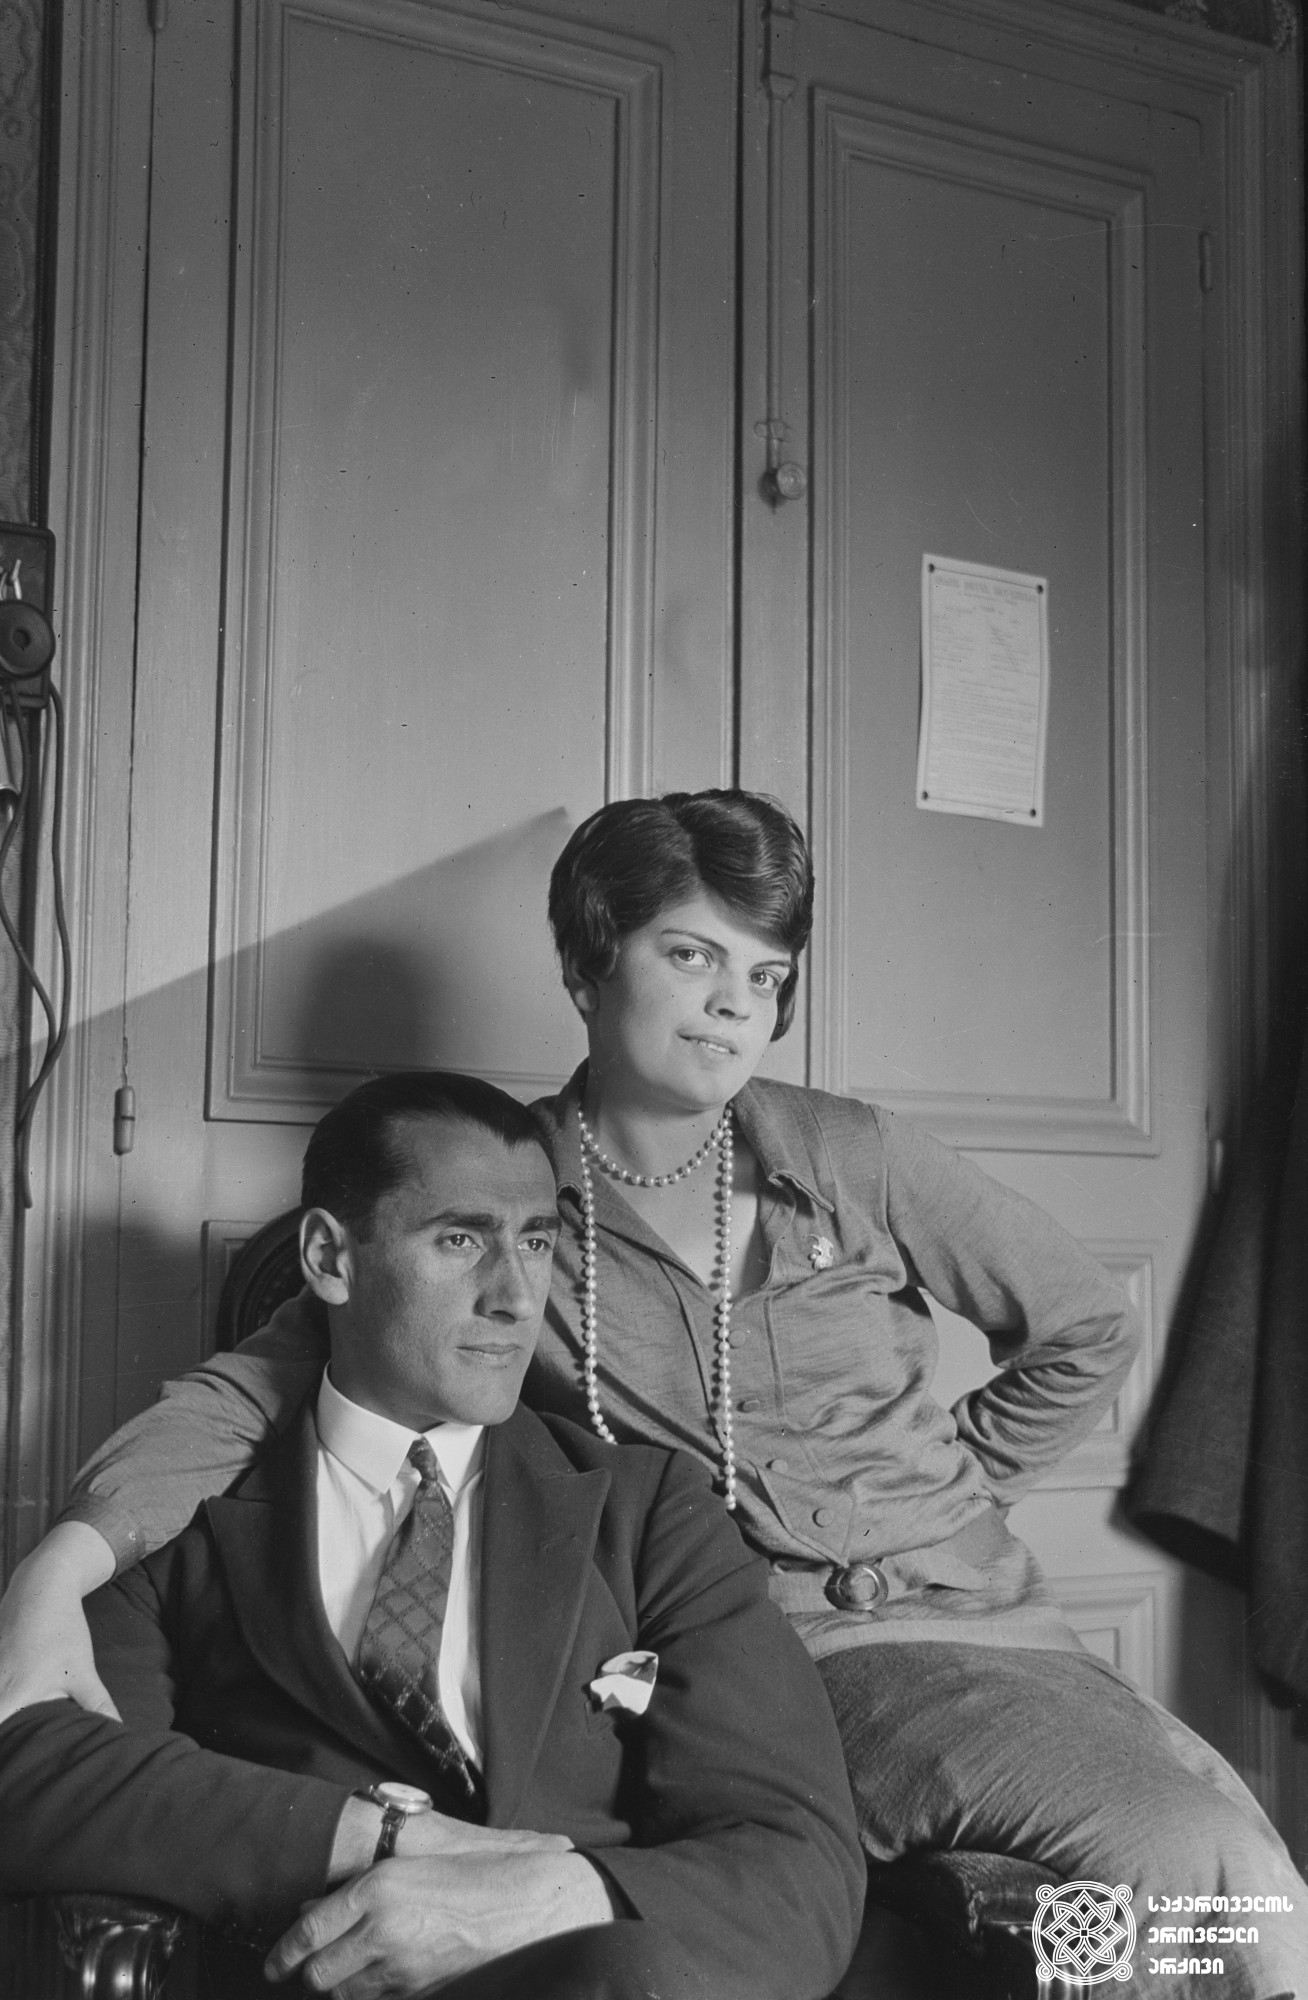 ნიკო ნიკოლაძის ვაჟი გიორგი ნიკოლაძე და მისი მეუღლე ჟორჟეტა ღამბაშიძე. <br>
საფრანგეთი, 1928 წელი. <br>
ნიკოლაძე-ღამბაშიძის ფოტოკოლექცია.